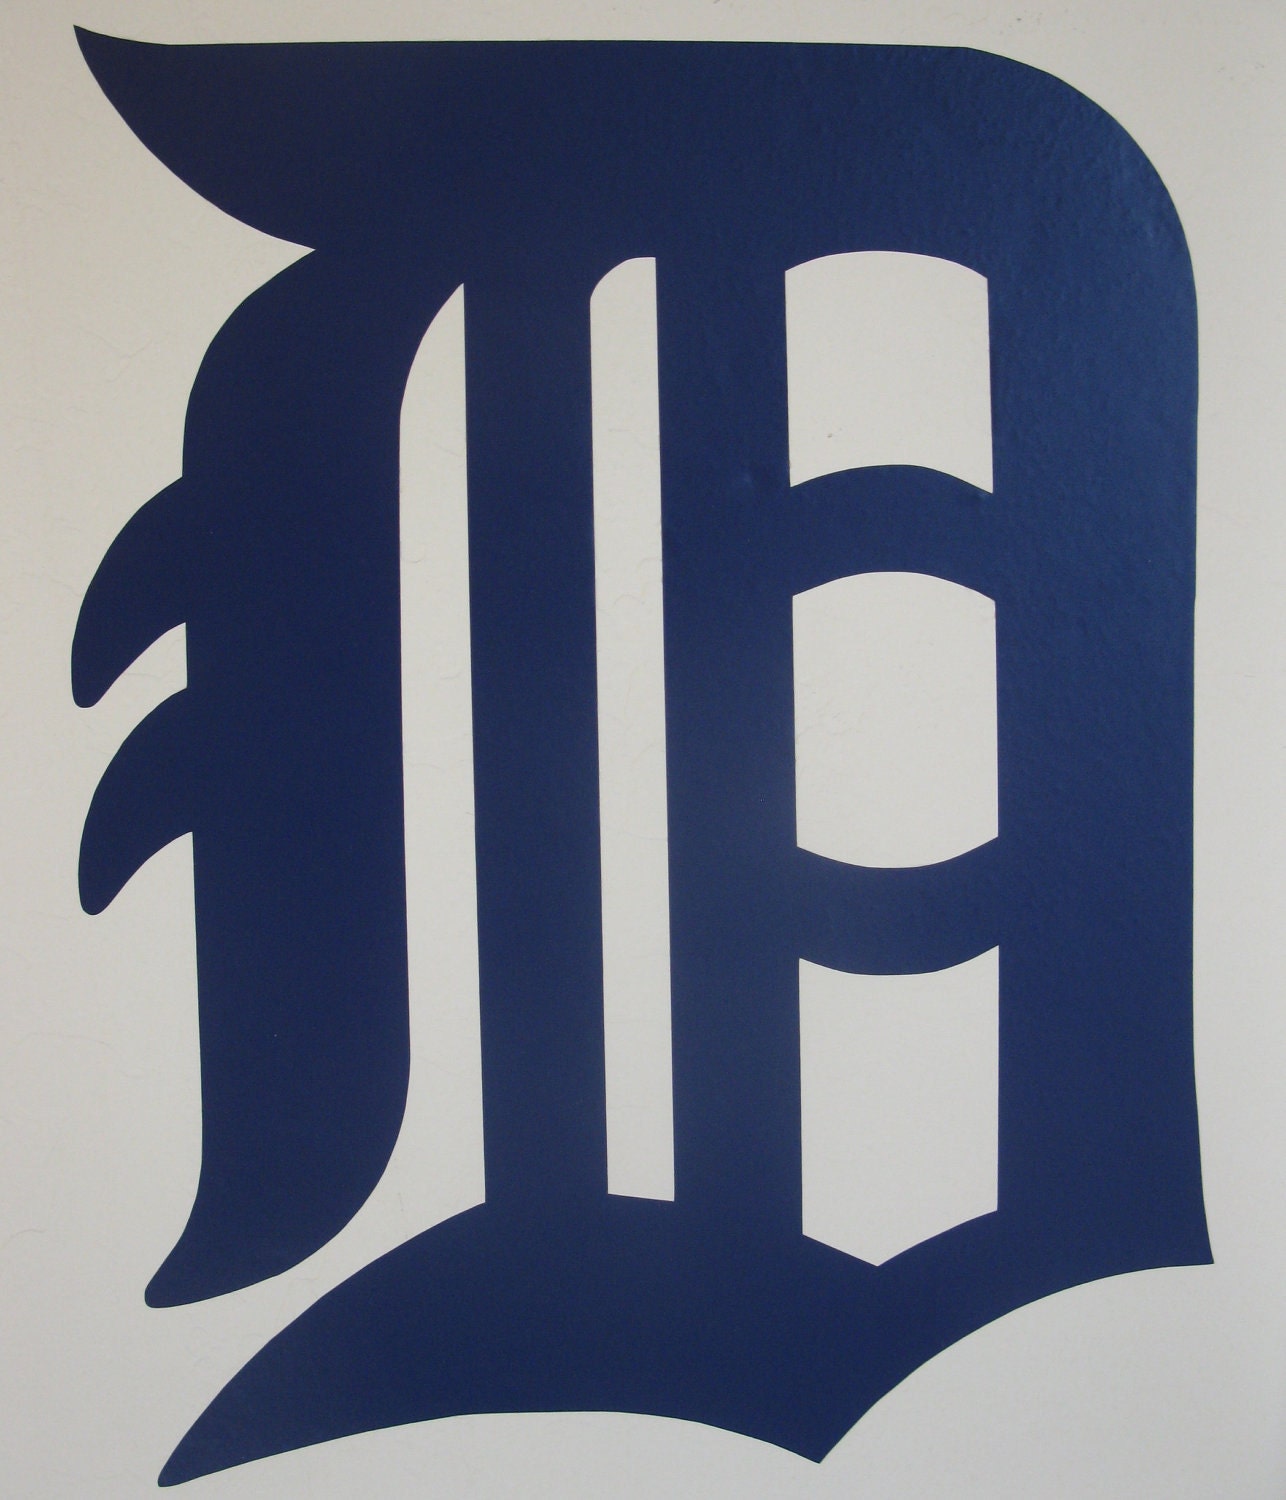 Detroit Tigers Logo Pics